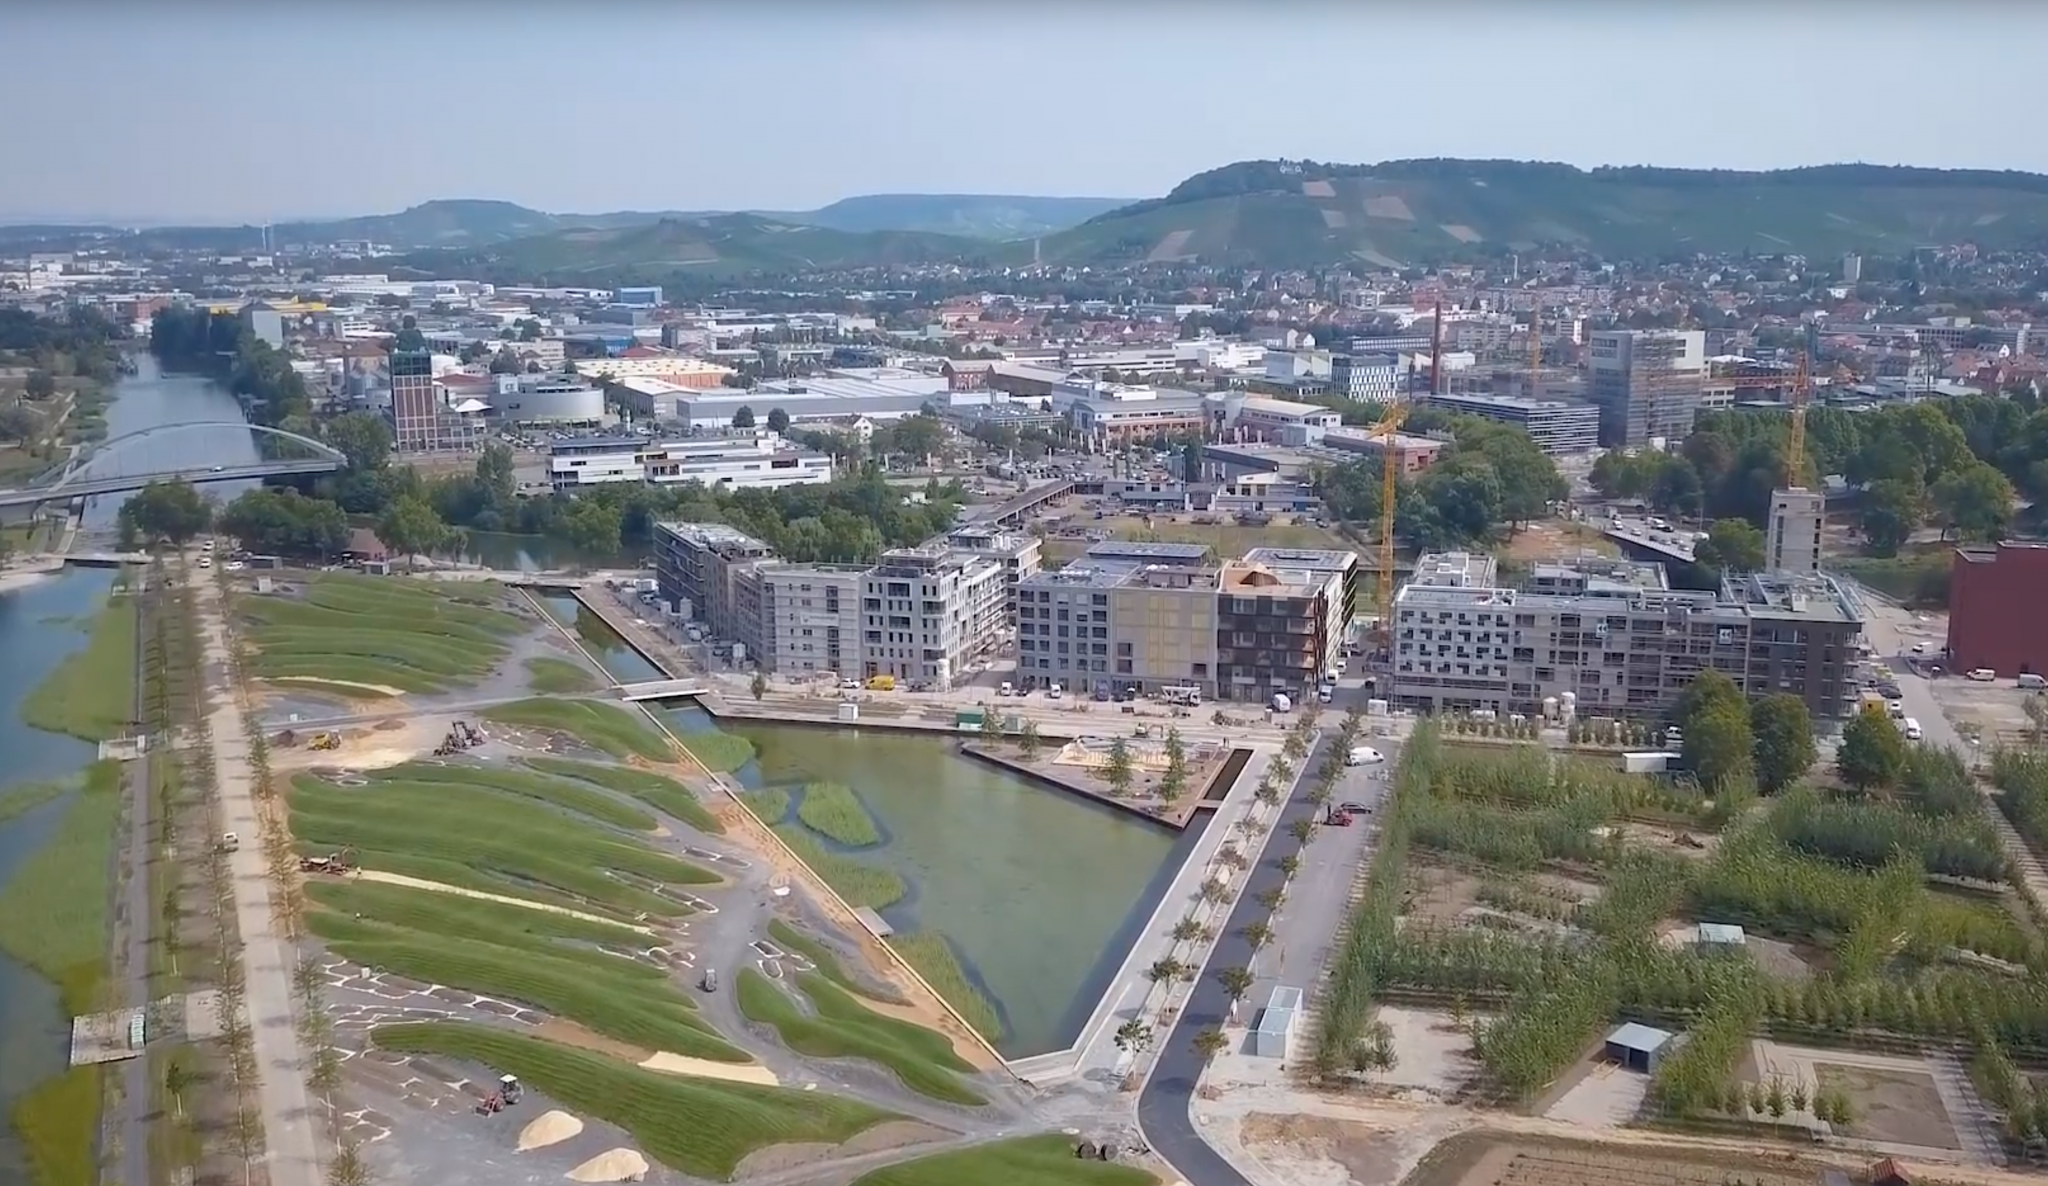 In Heilbronn wird durch die BUGA 2019 ein neues Wohnquartier geschaffen. (Foto: Screenshot Youtube)